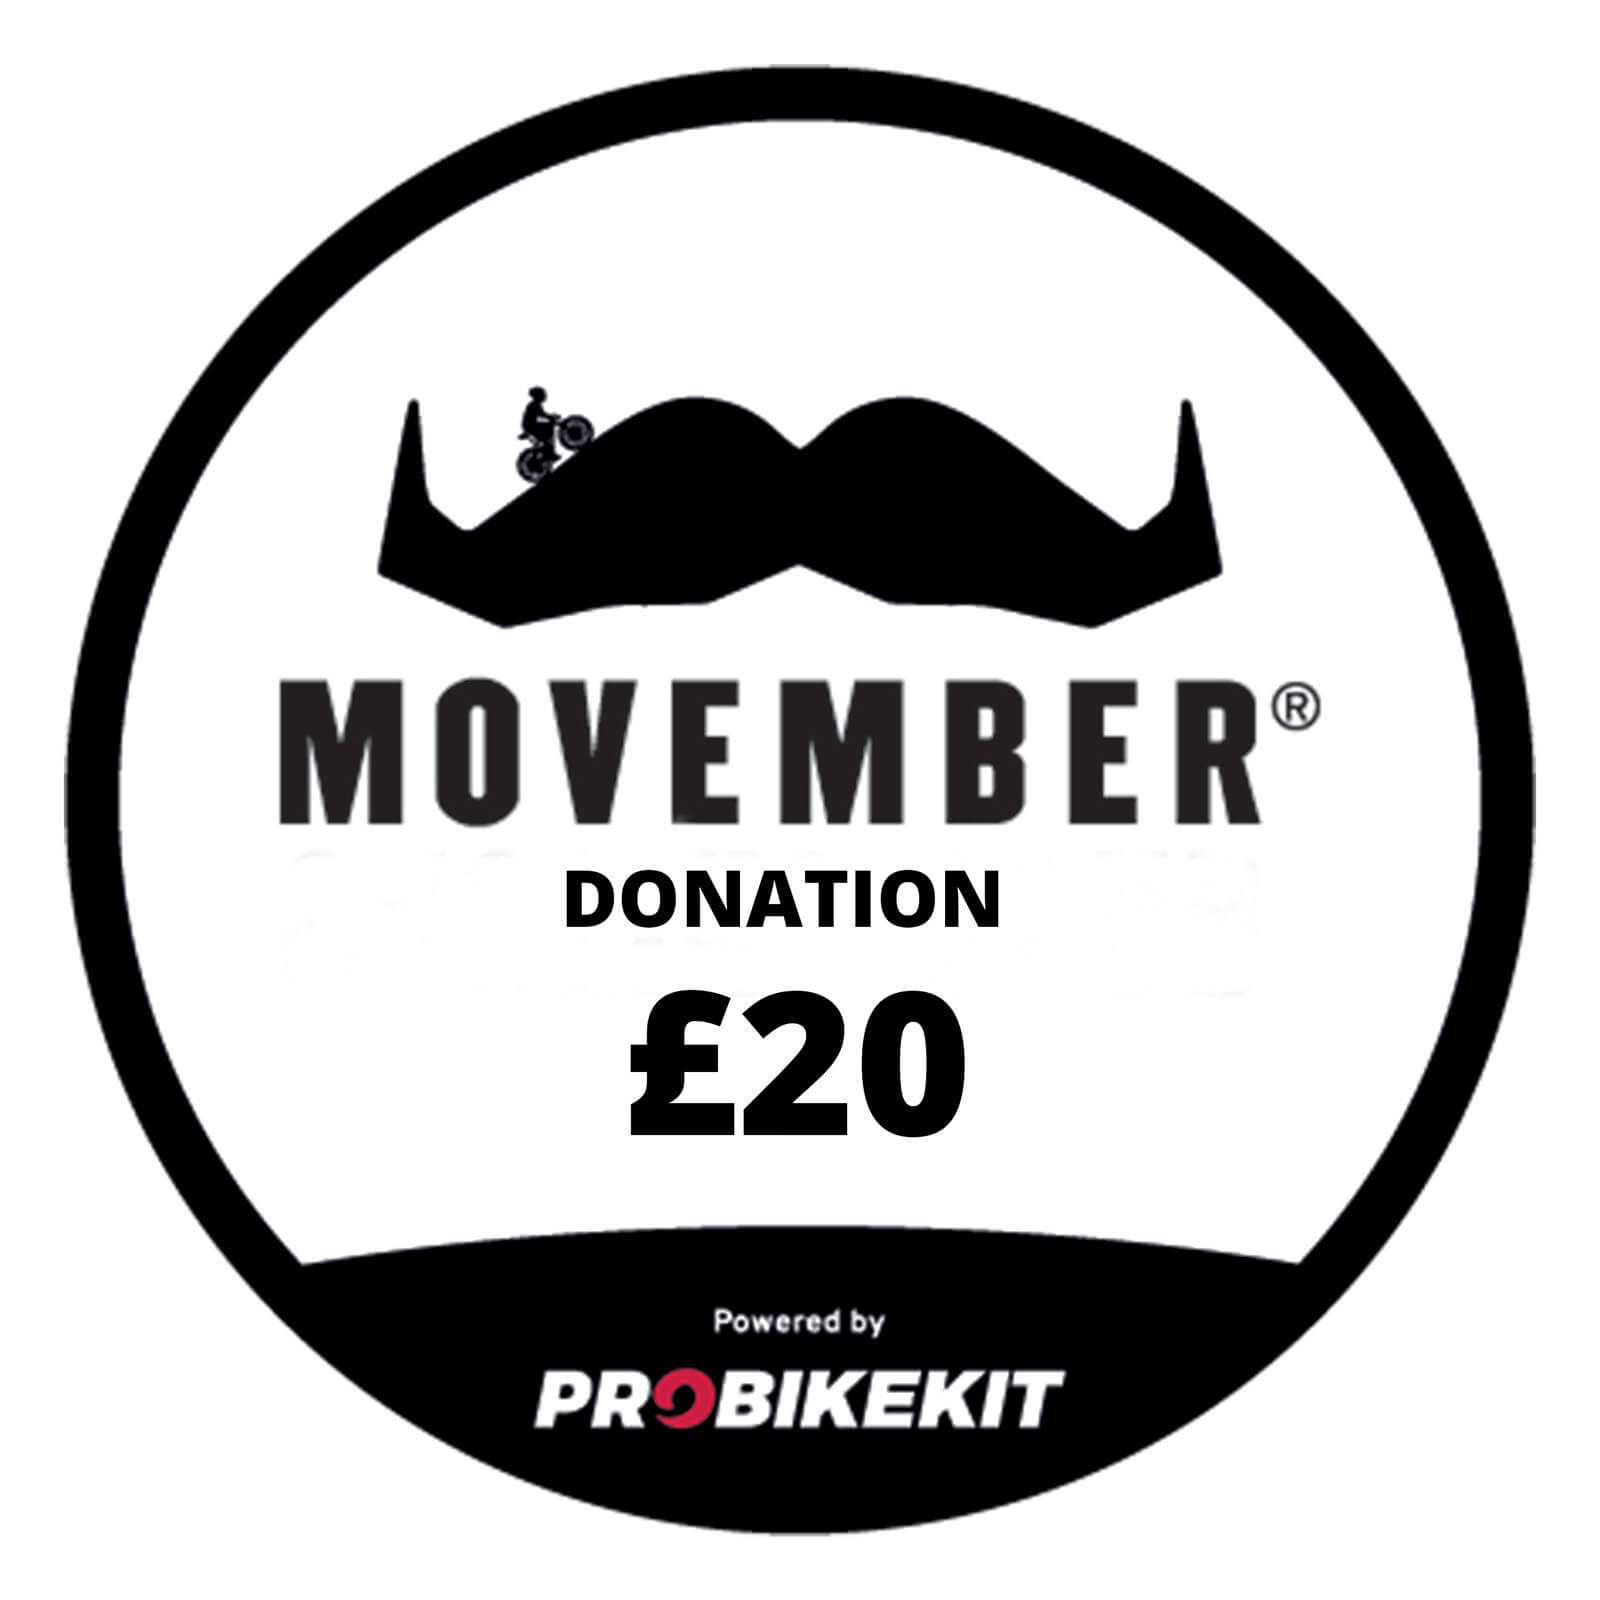 Movember - £20 Charity Donation